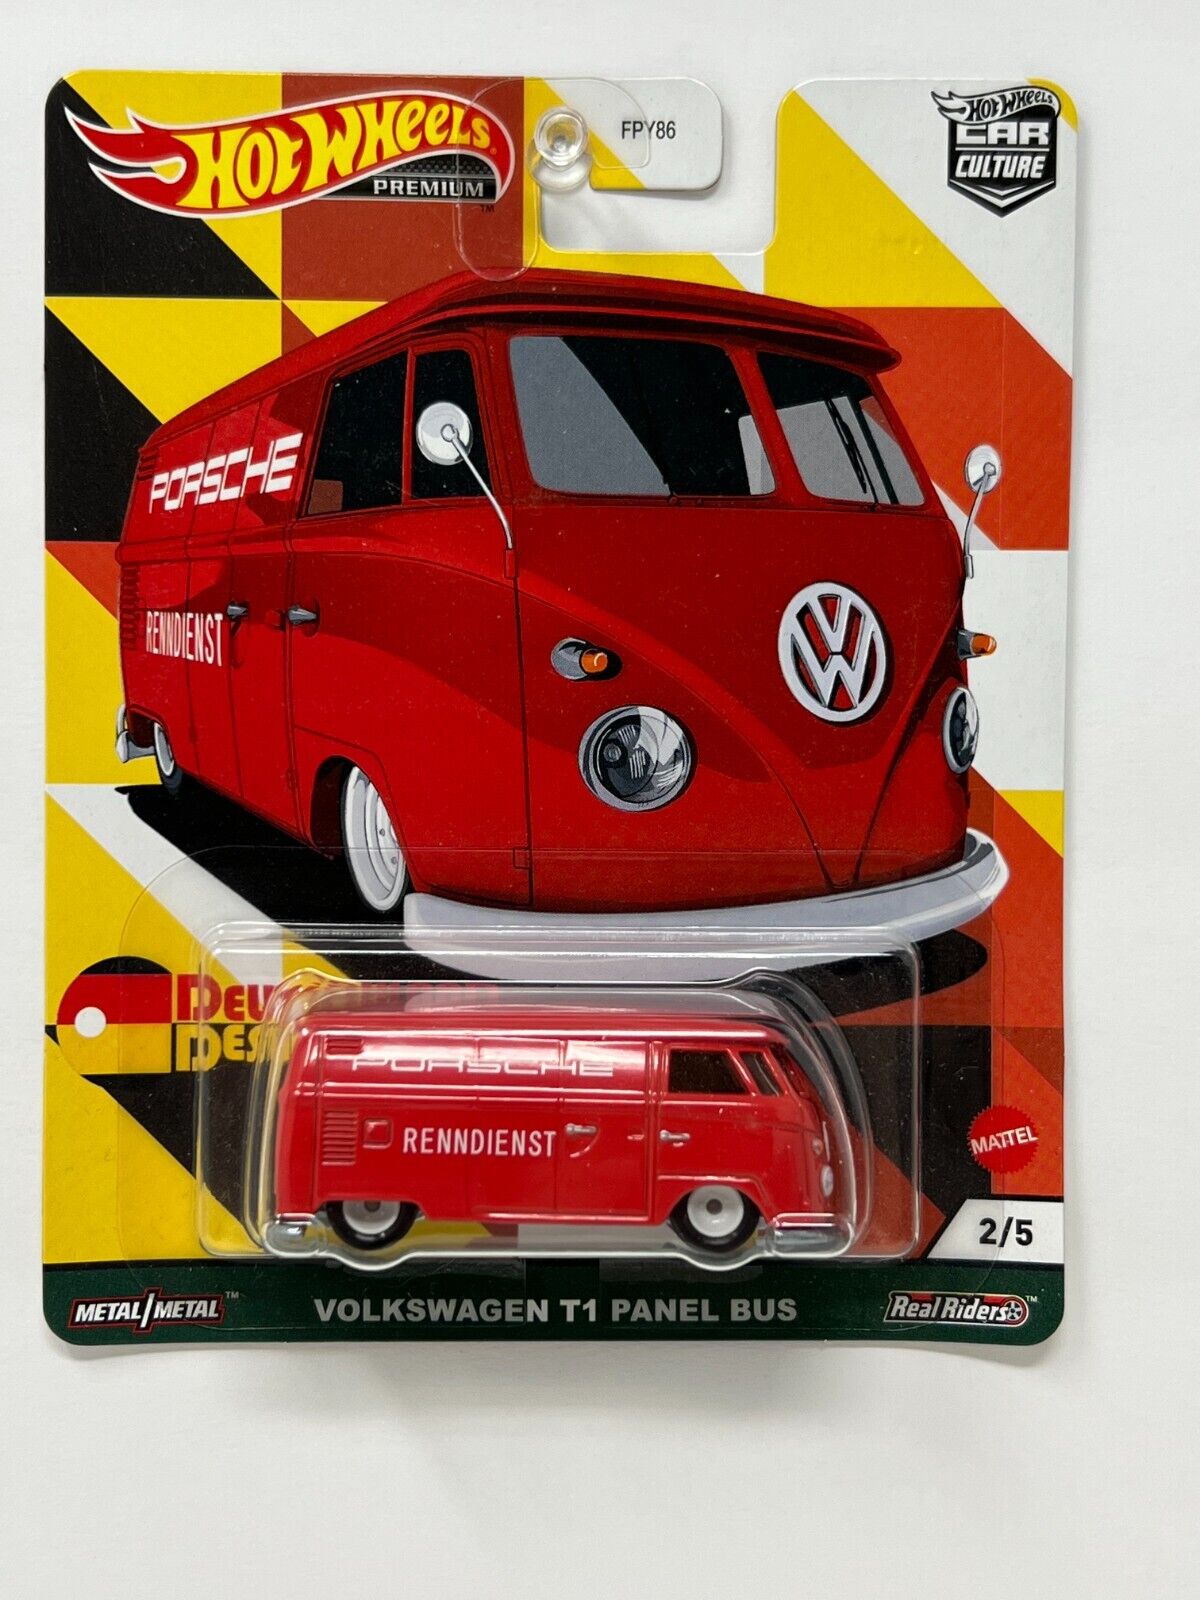 Hot Wheels Premium Deutschland Design Volkswagen T1 Panel Bus 1:64 Diecast